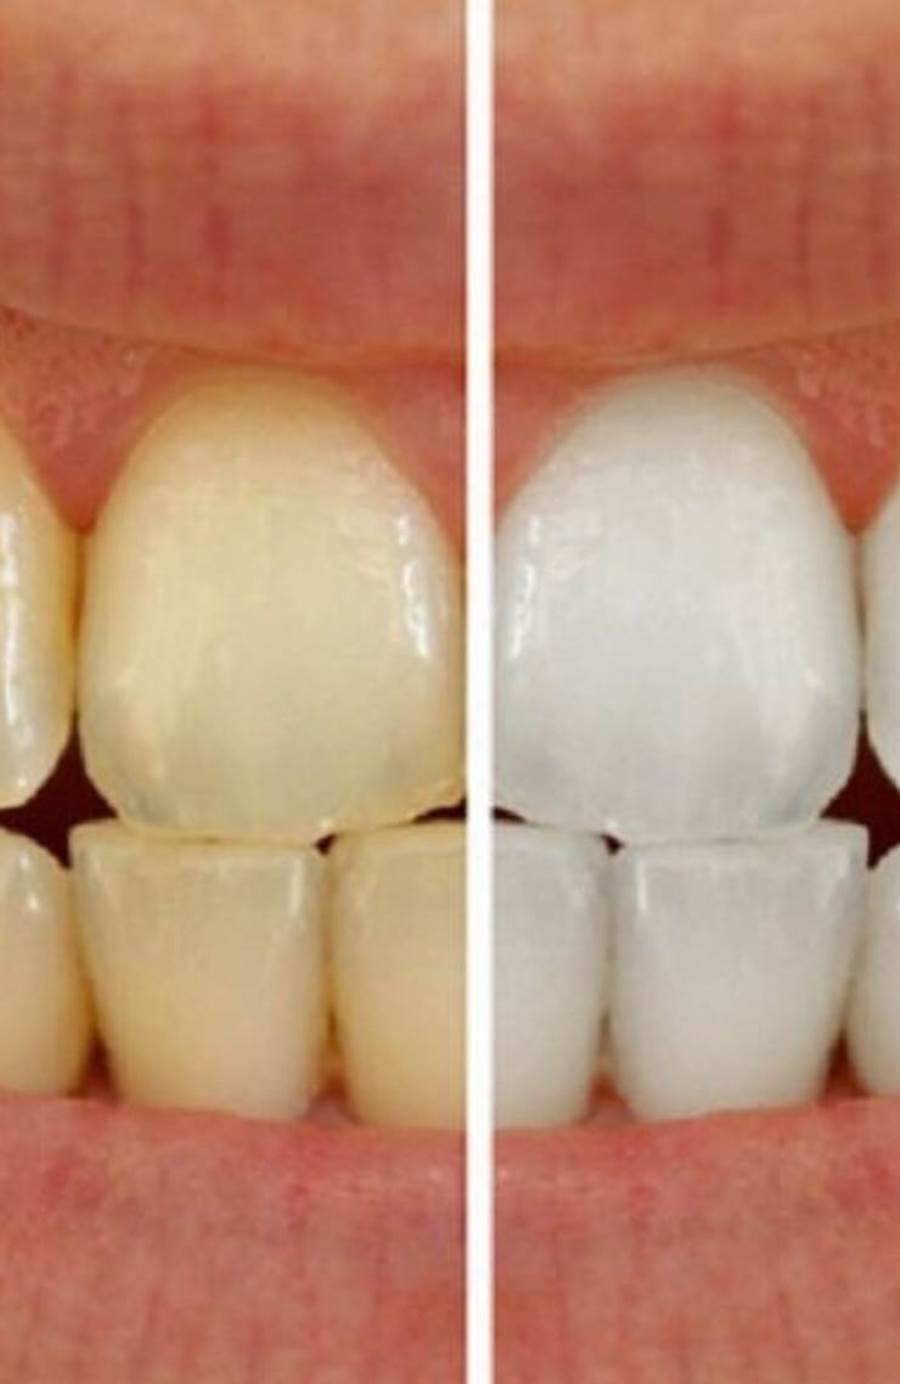 وصفة سحرية لإزالة جير الأسنان